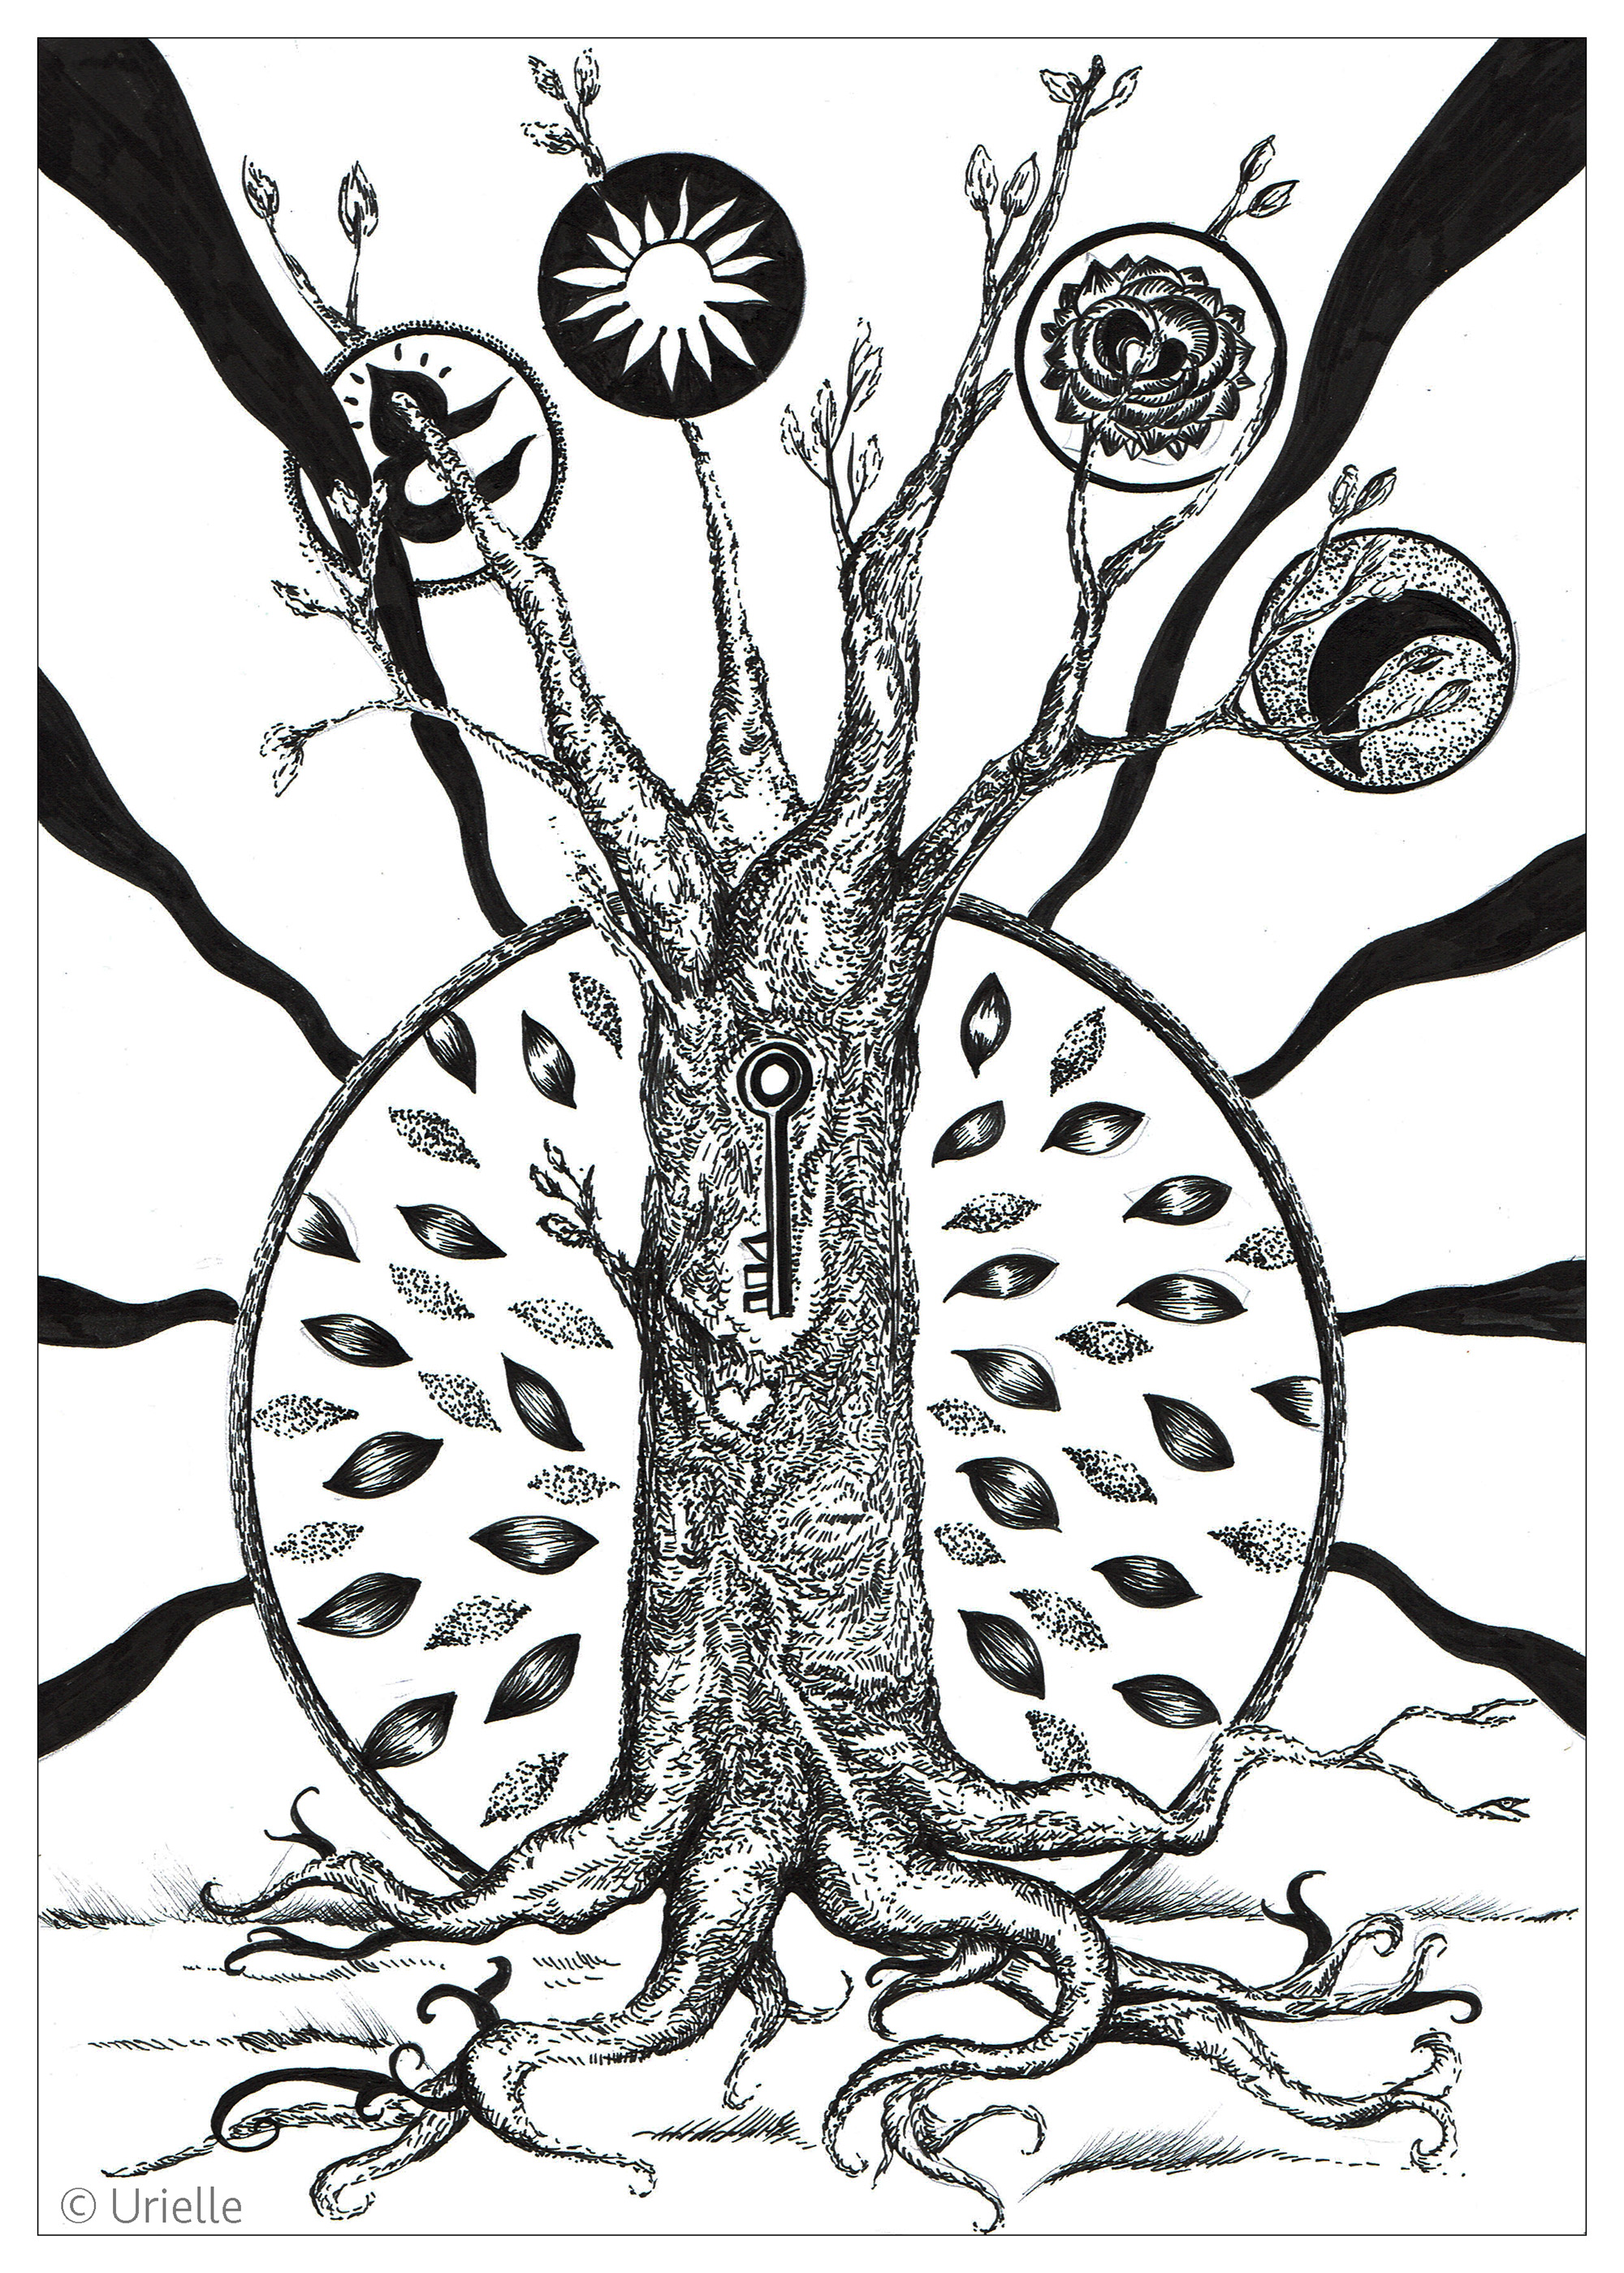 A chave da árvore. Coloração mística e inspiradora